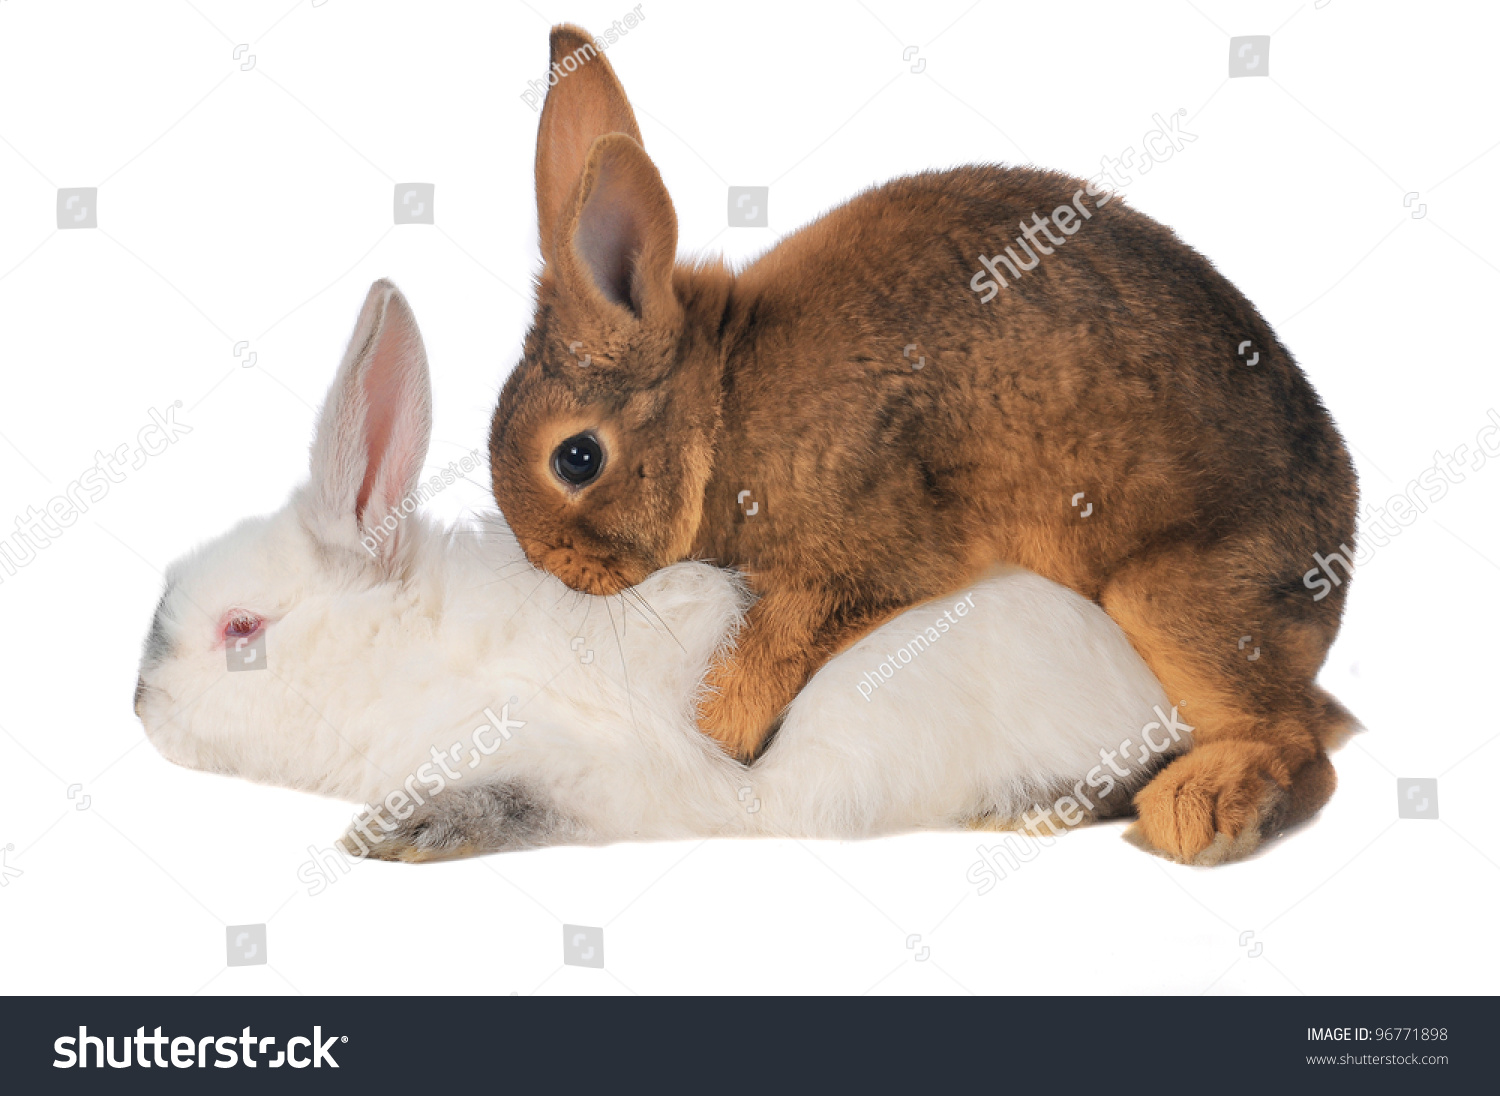 Rabbits Sex 13